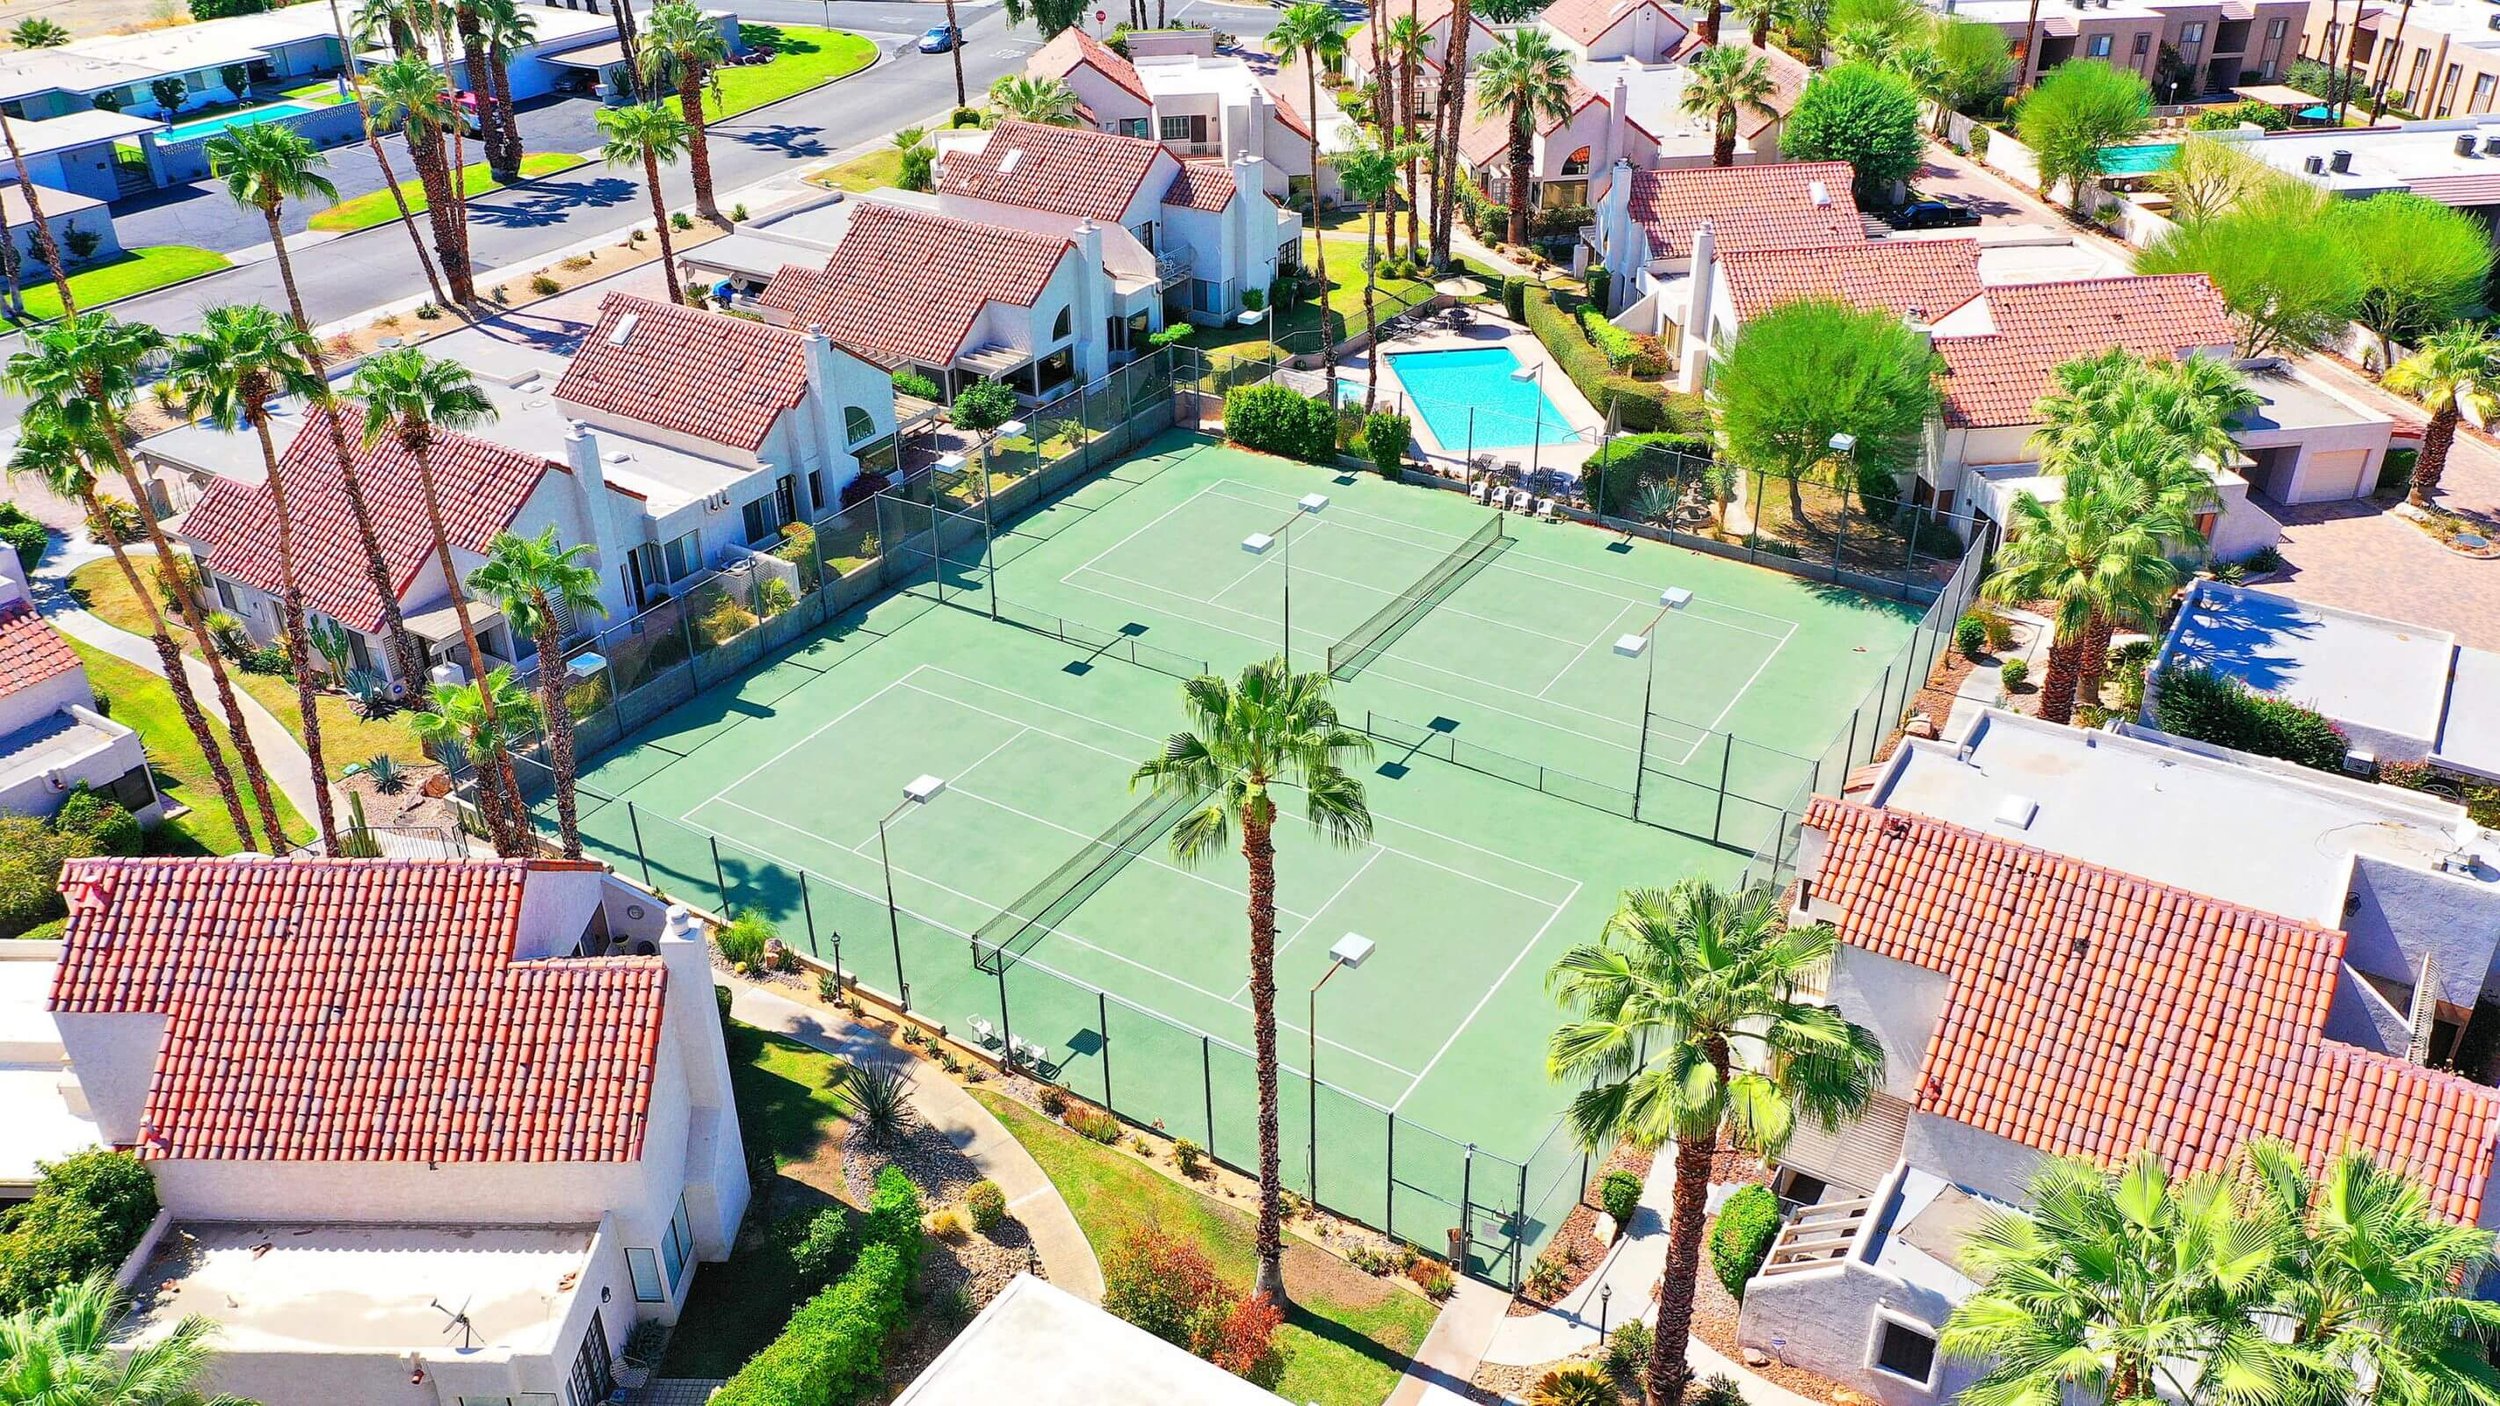 Sandroc Tennis Court